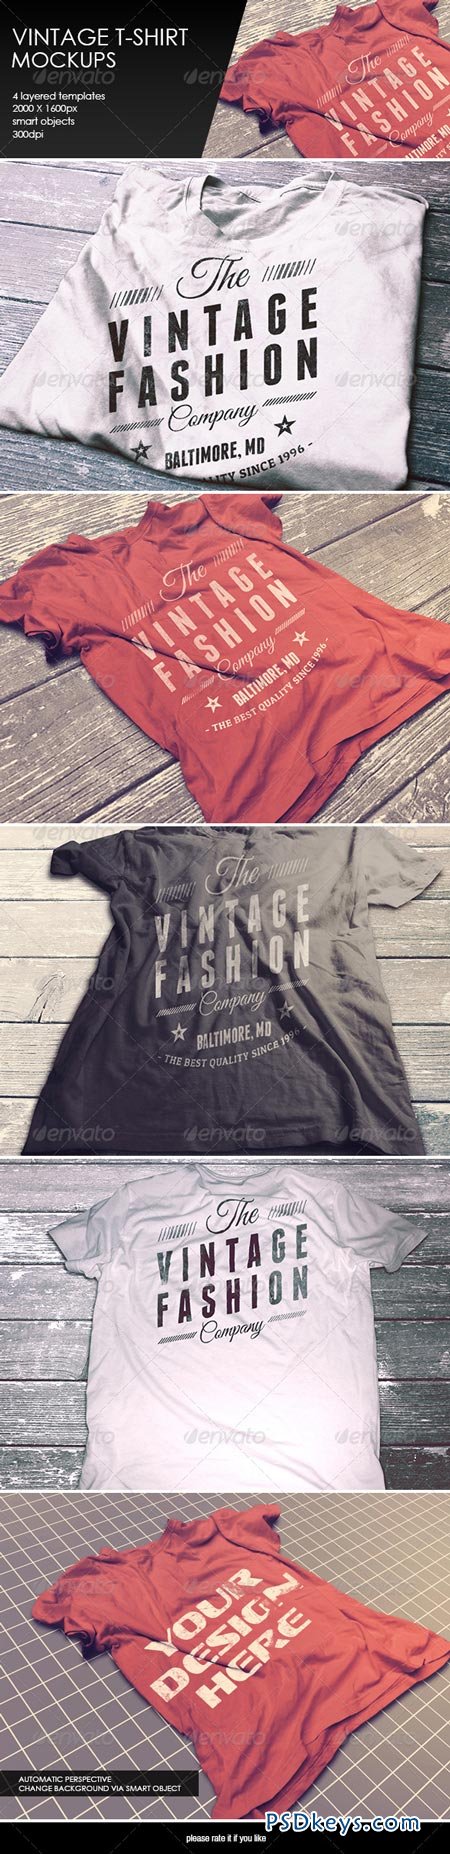 Download Vintage T-Shirt Mockup 8376796 » Free Download Photoshop ...